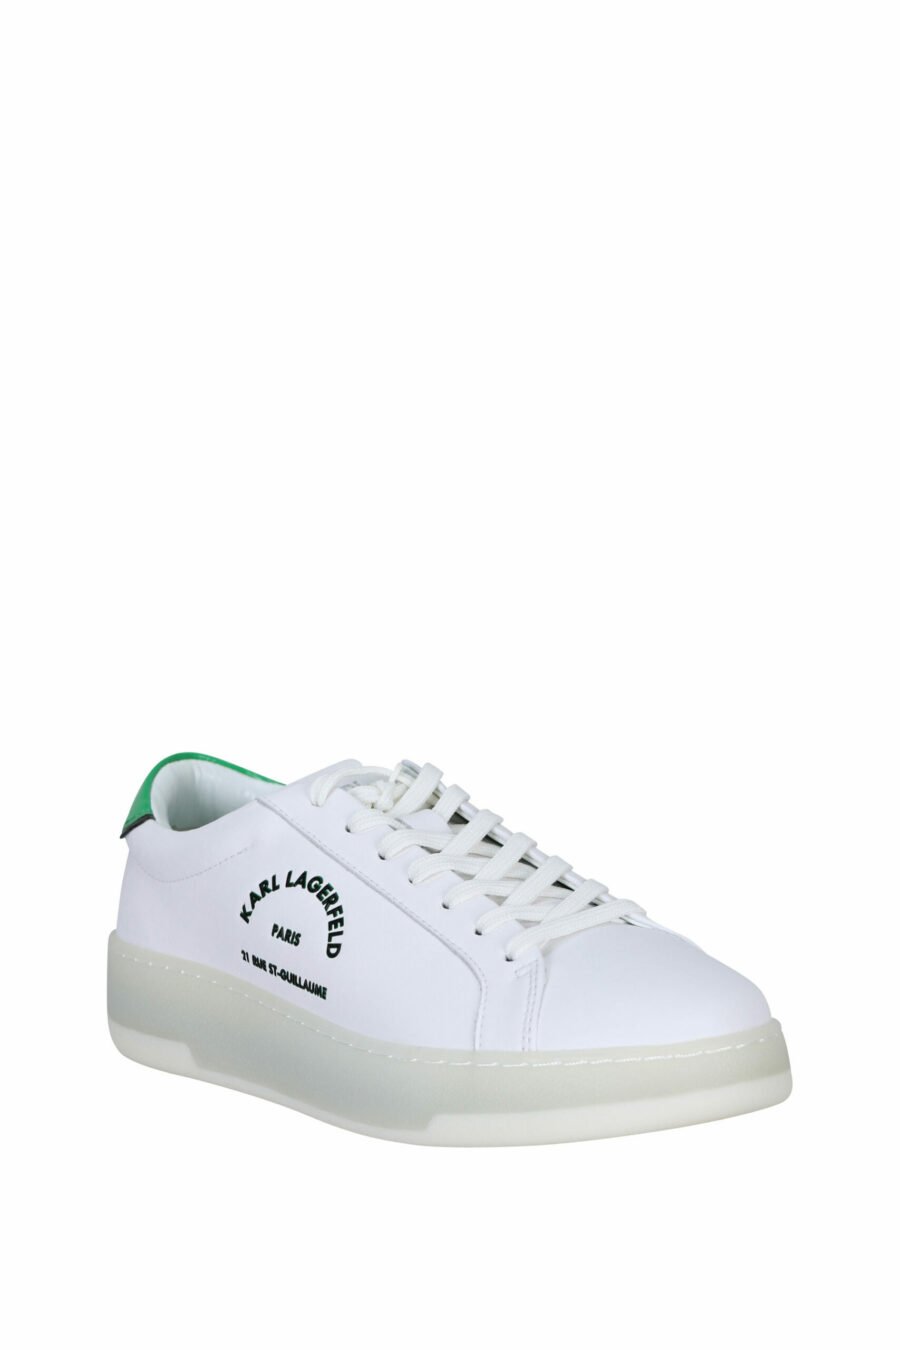 Baskets blanches avec détails verts et logo "st rue guillaume" - 5059529291289 1 scaled